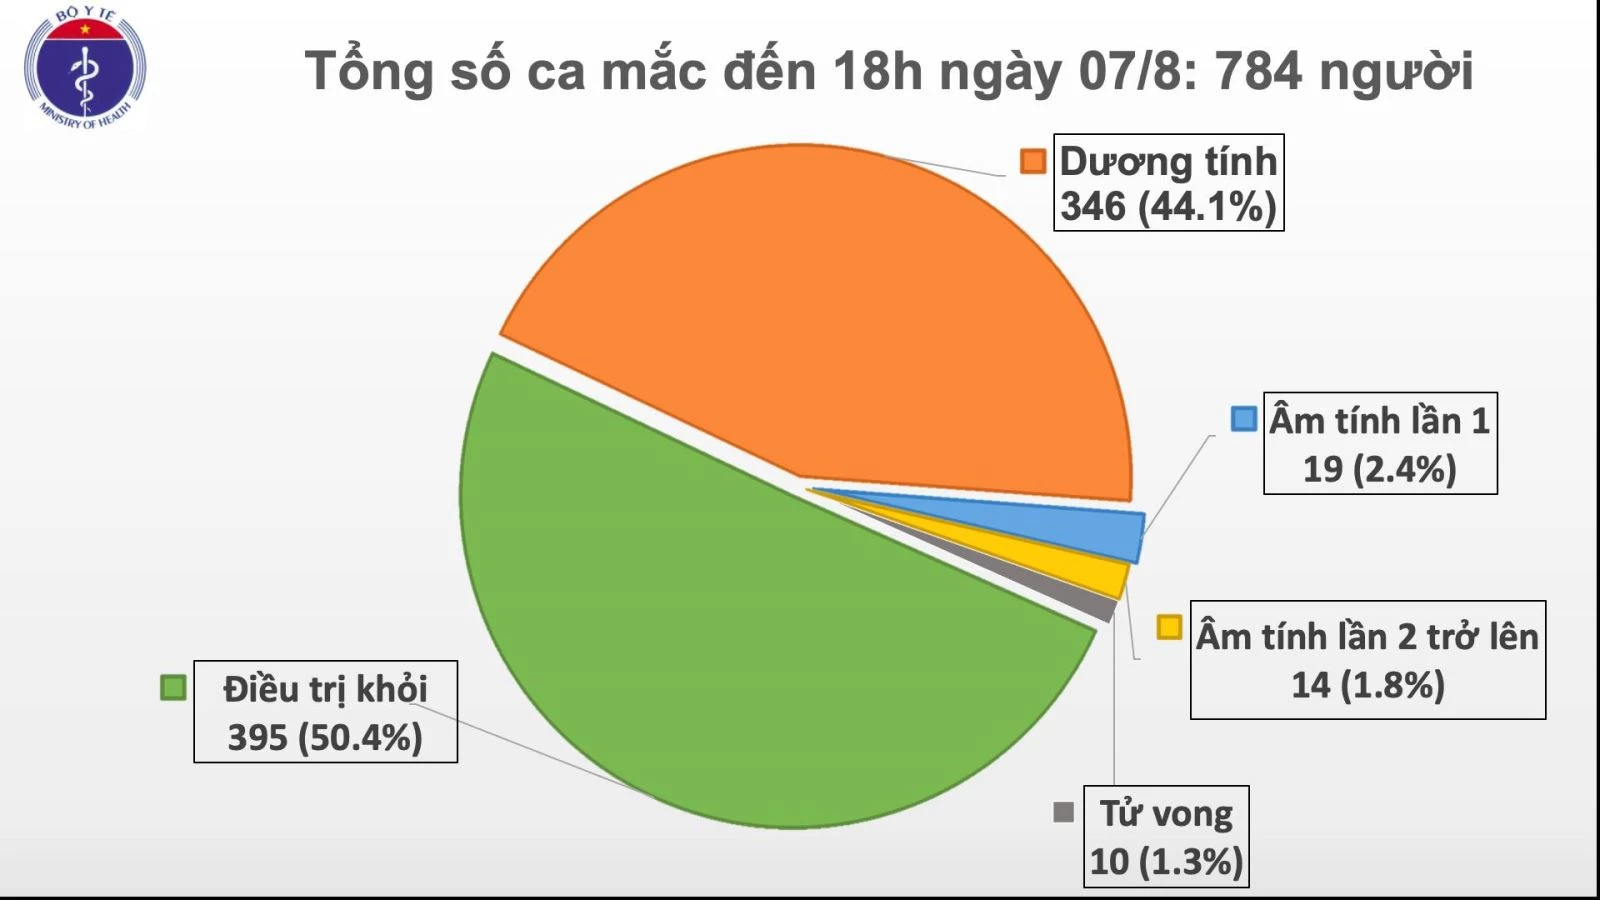 Tỉnh hình dịch bệnh Covd-19 tại Việt Nam tính đến 18h ngày 7/8.